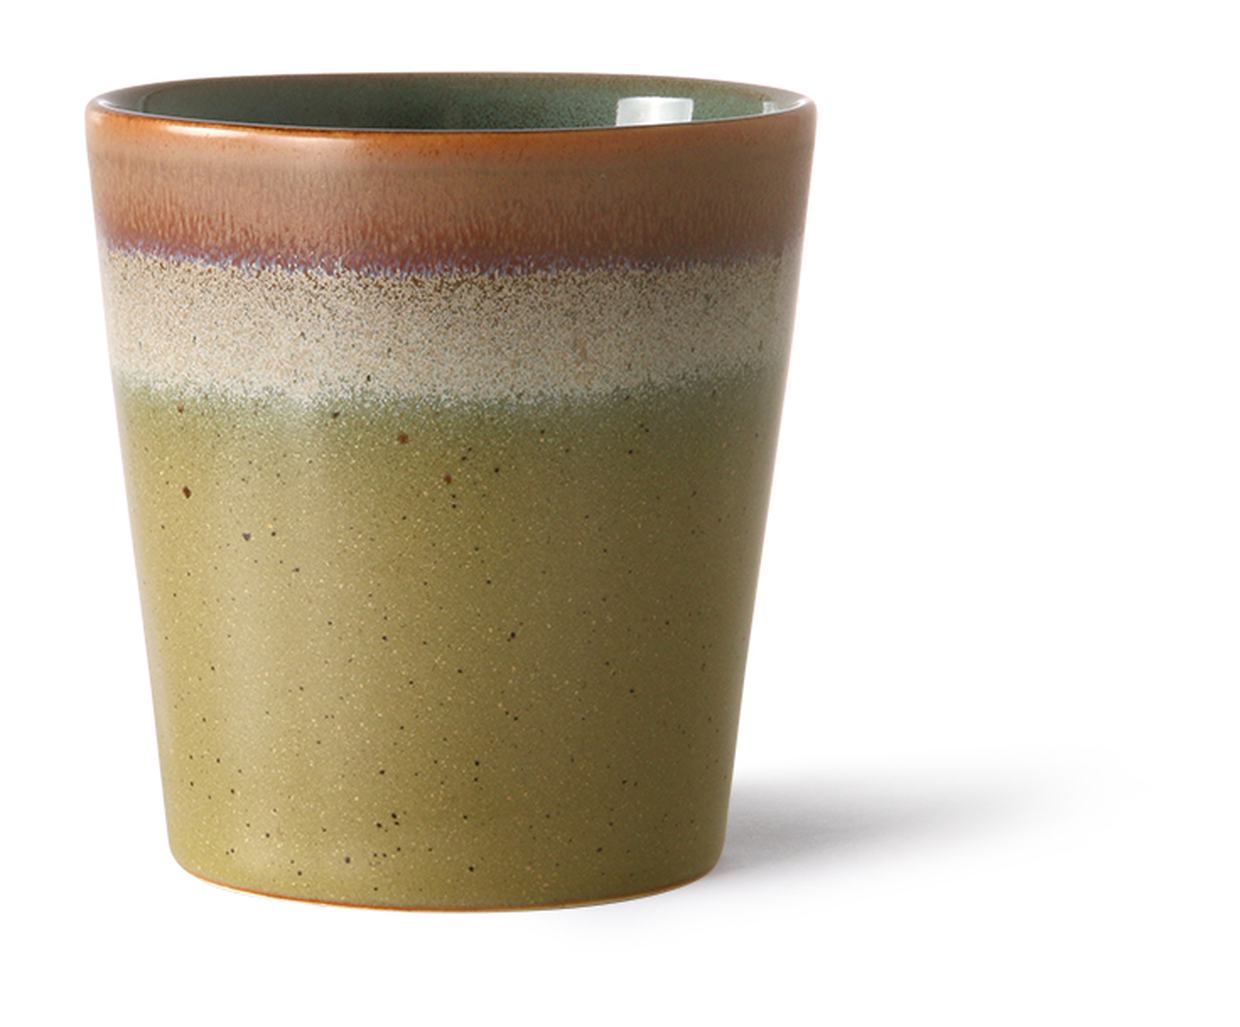 70s ceramics: coffee mugs, spring greens (set of 4)